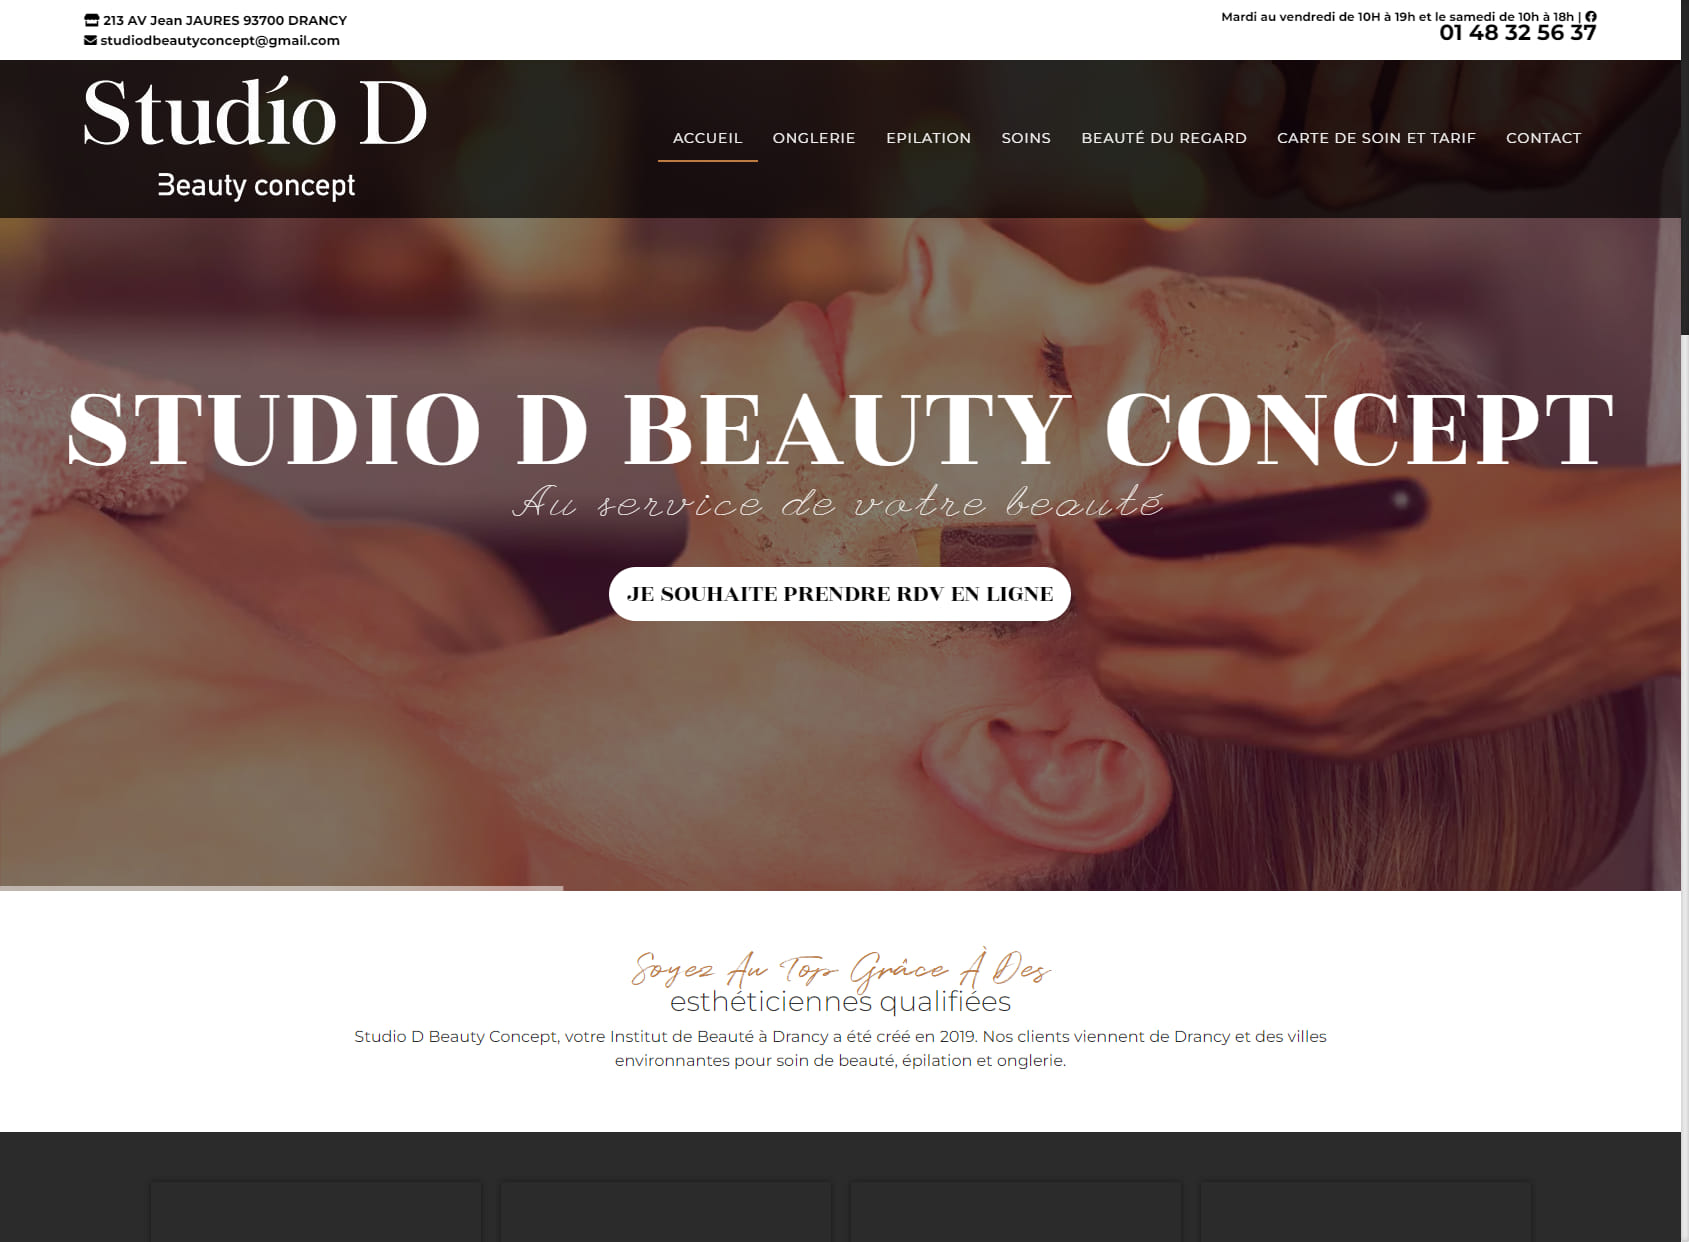 Studio D beauty concept